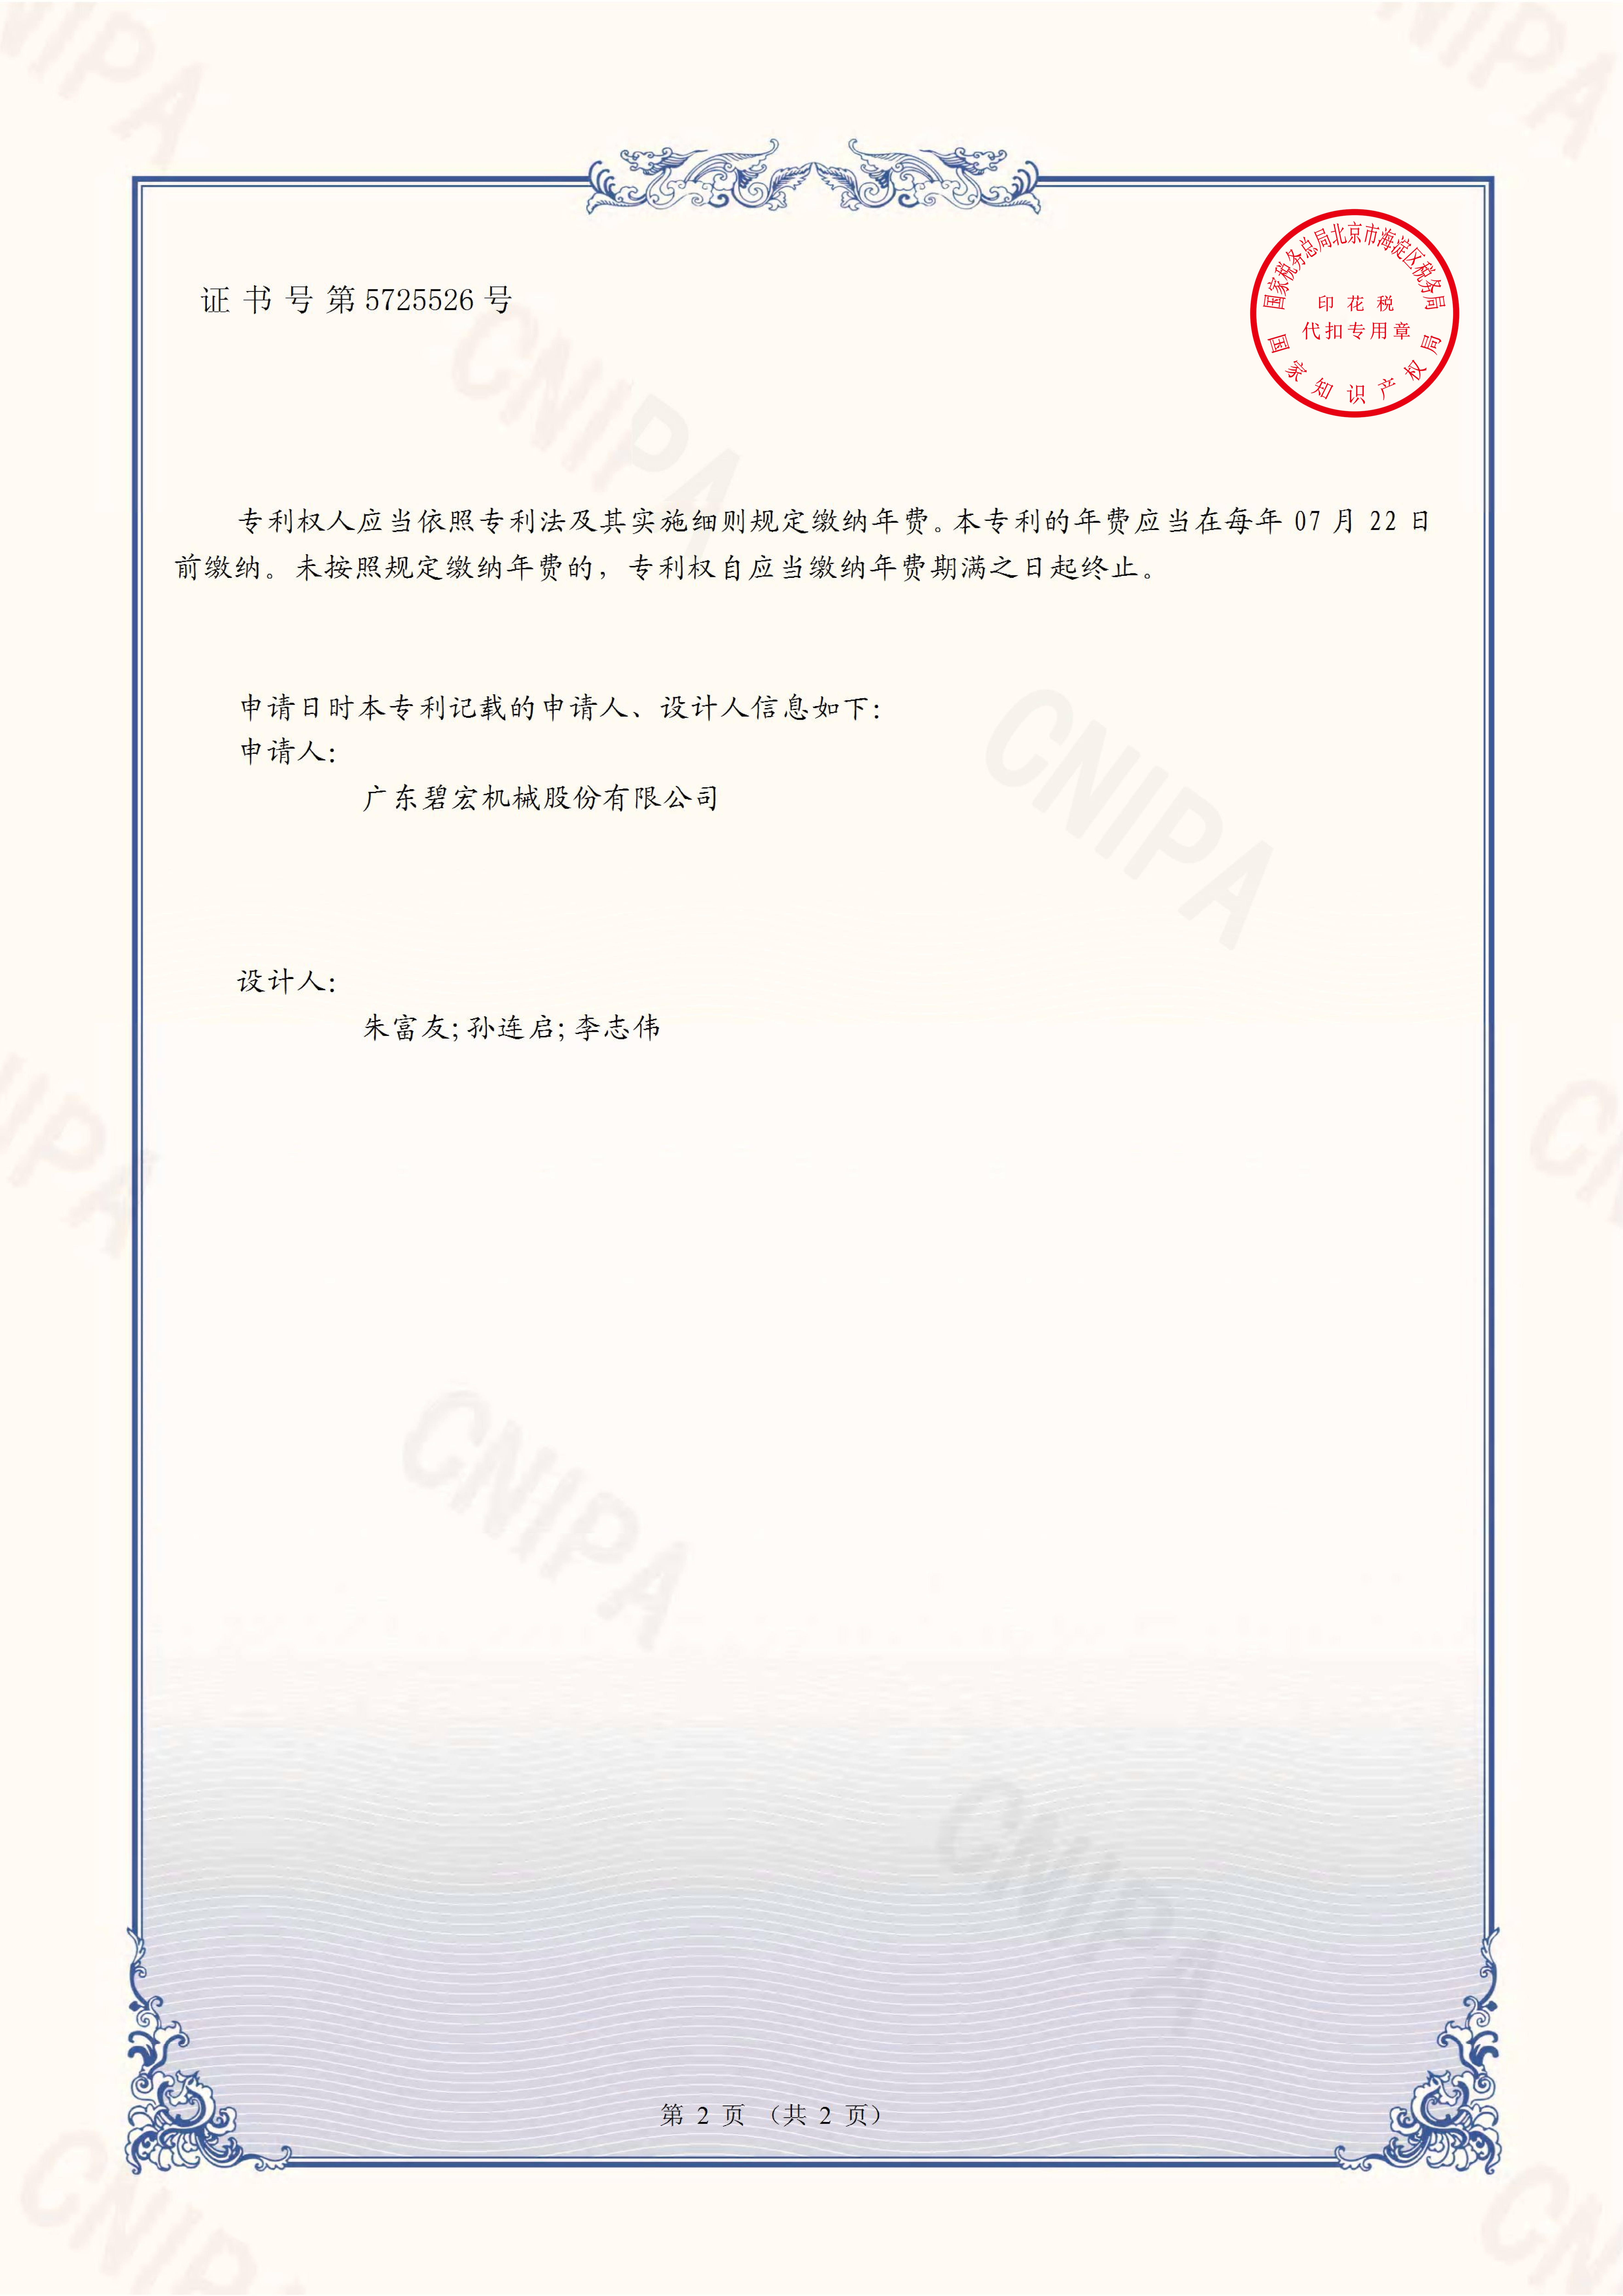 椭圆数码一体印花机-外观设计专利证书（签章）_01